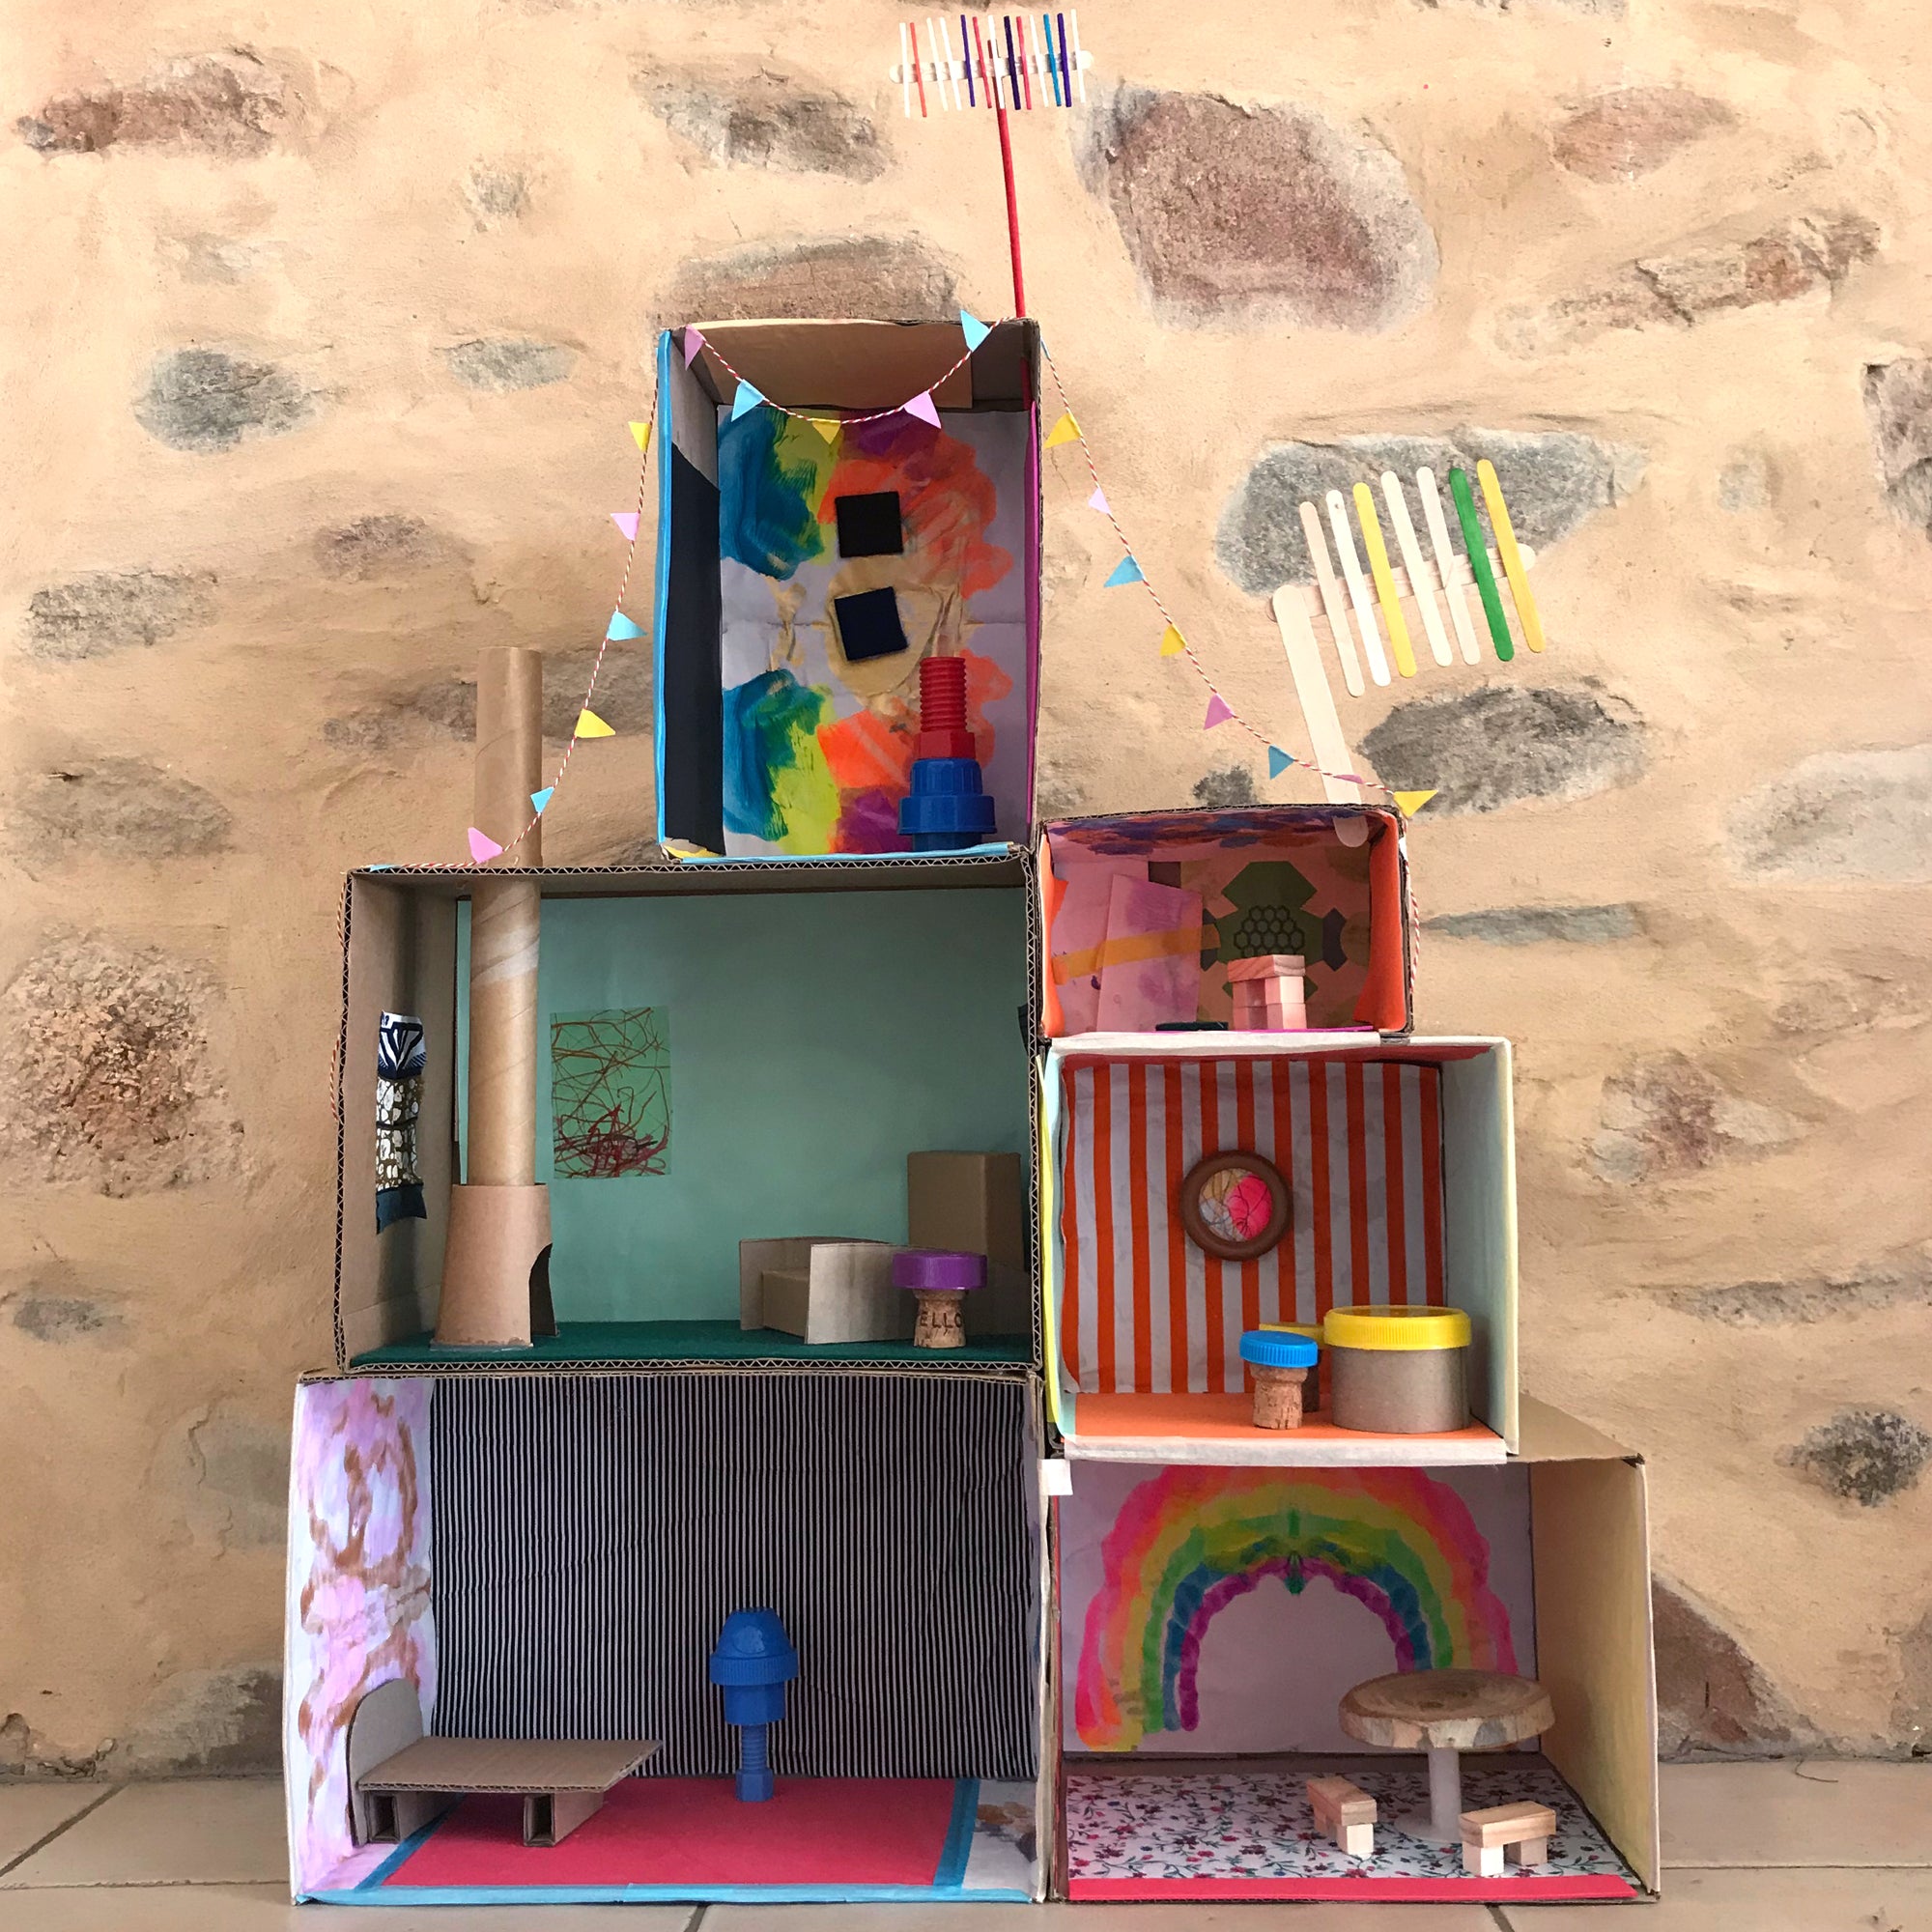 miniature cardboard house kits